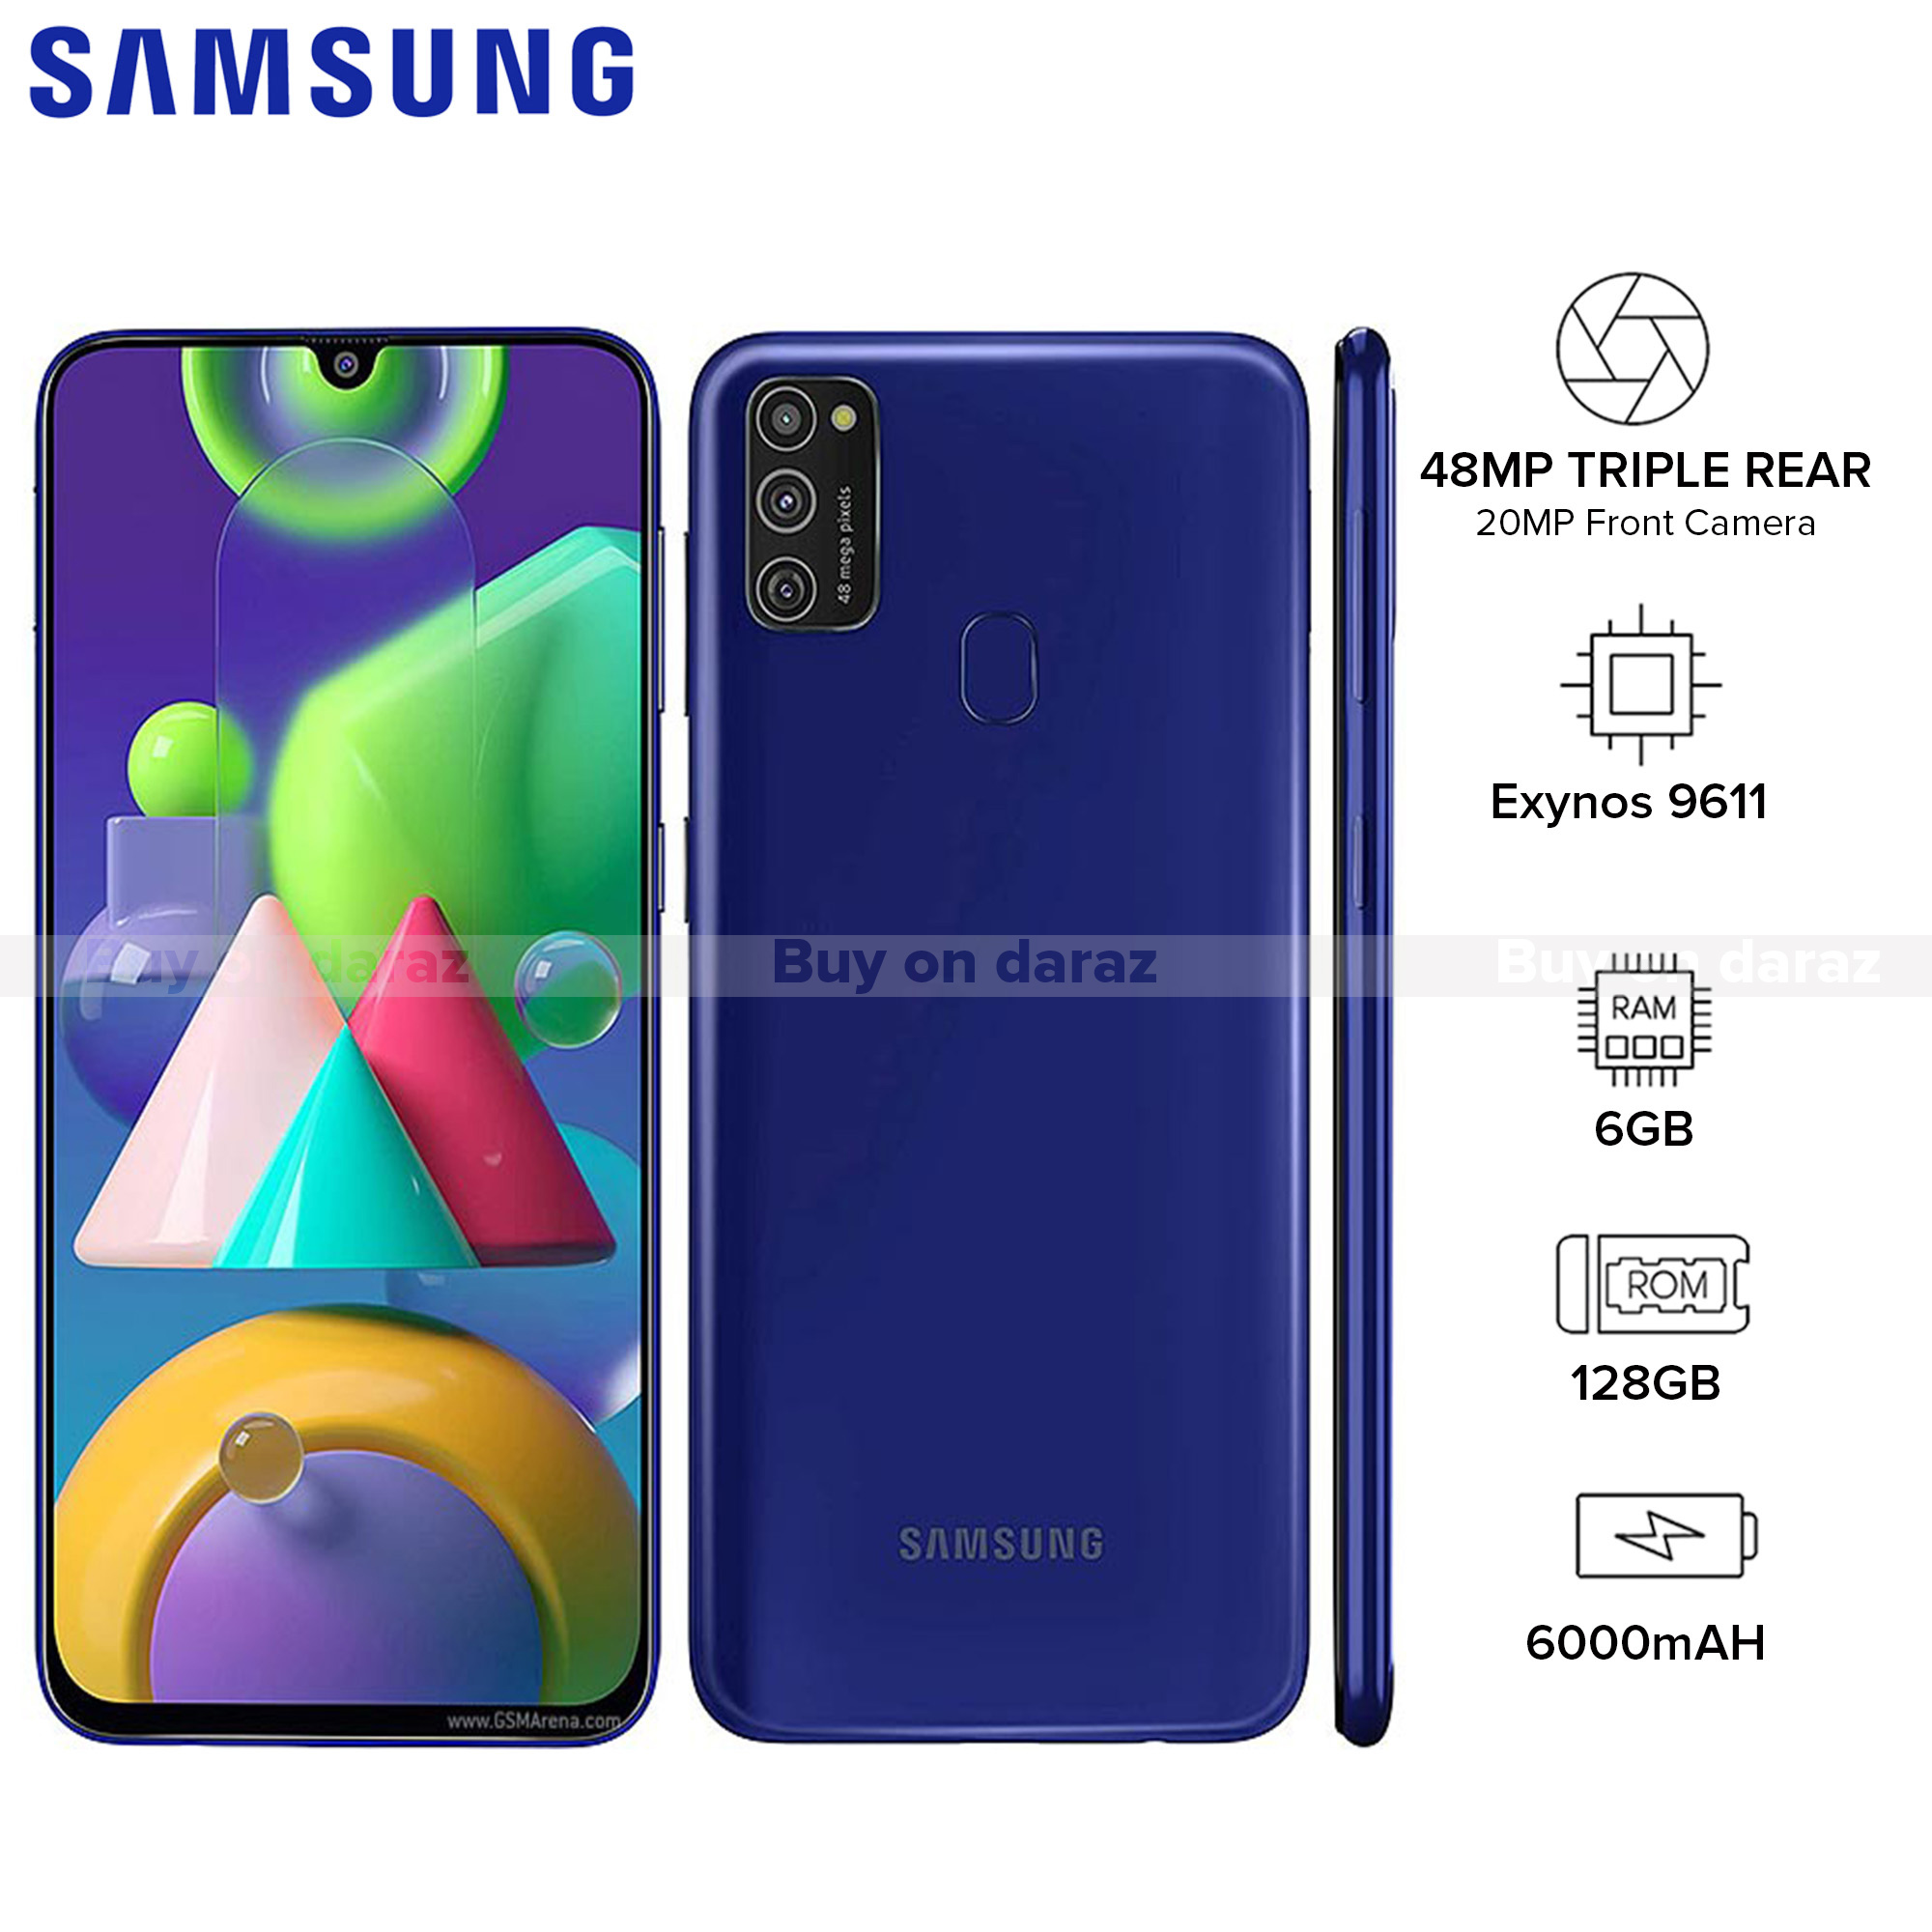 Samsung Mobile Price In Nepal Buy Samsung Mobiles Online Daraz Com Np